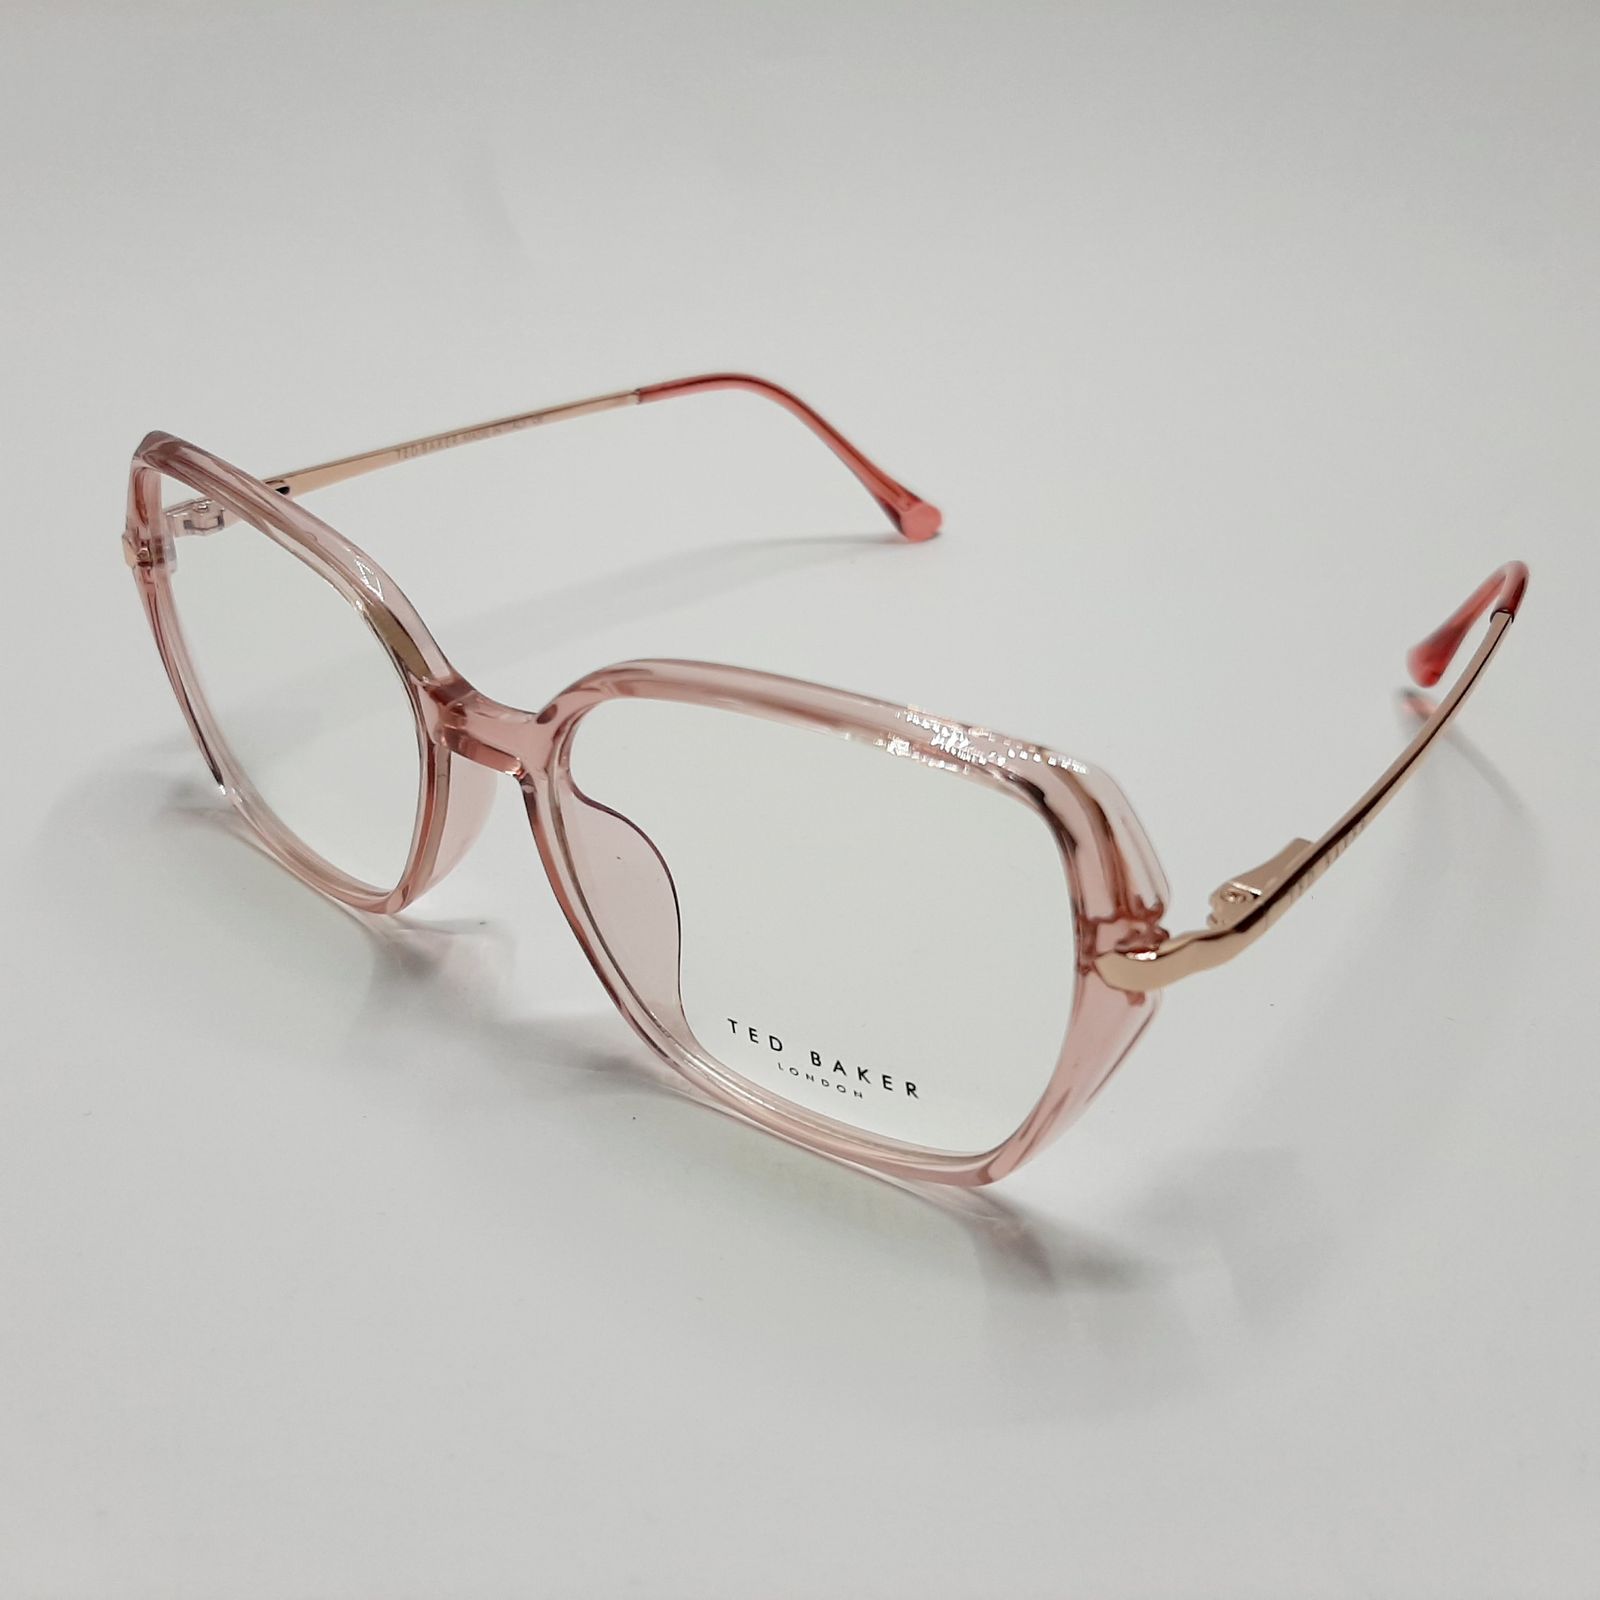 فریم عینک طبی زنانه تد بیکر مدل 95642c6 -  - 4